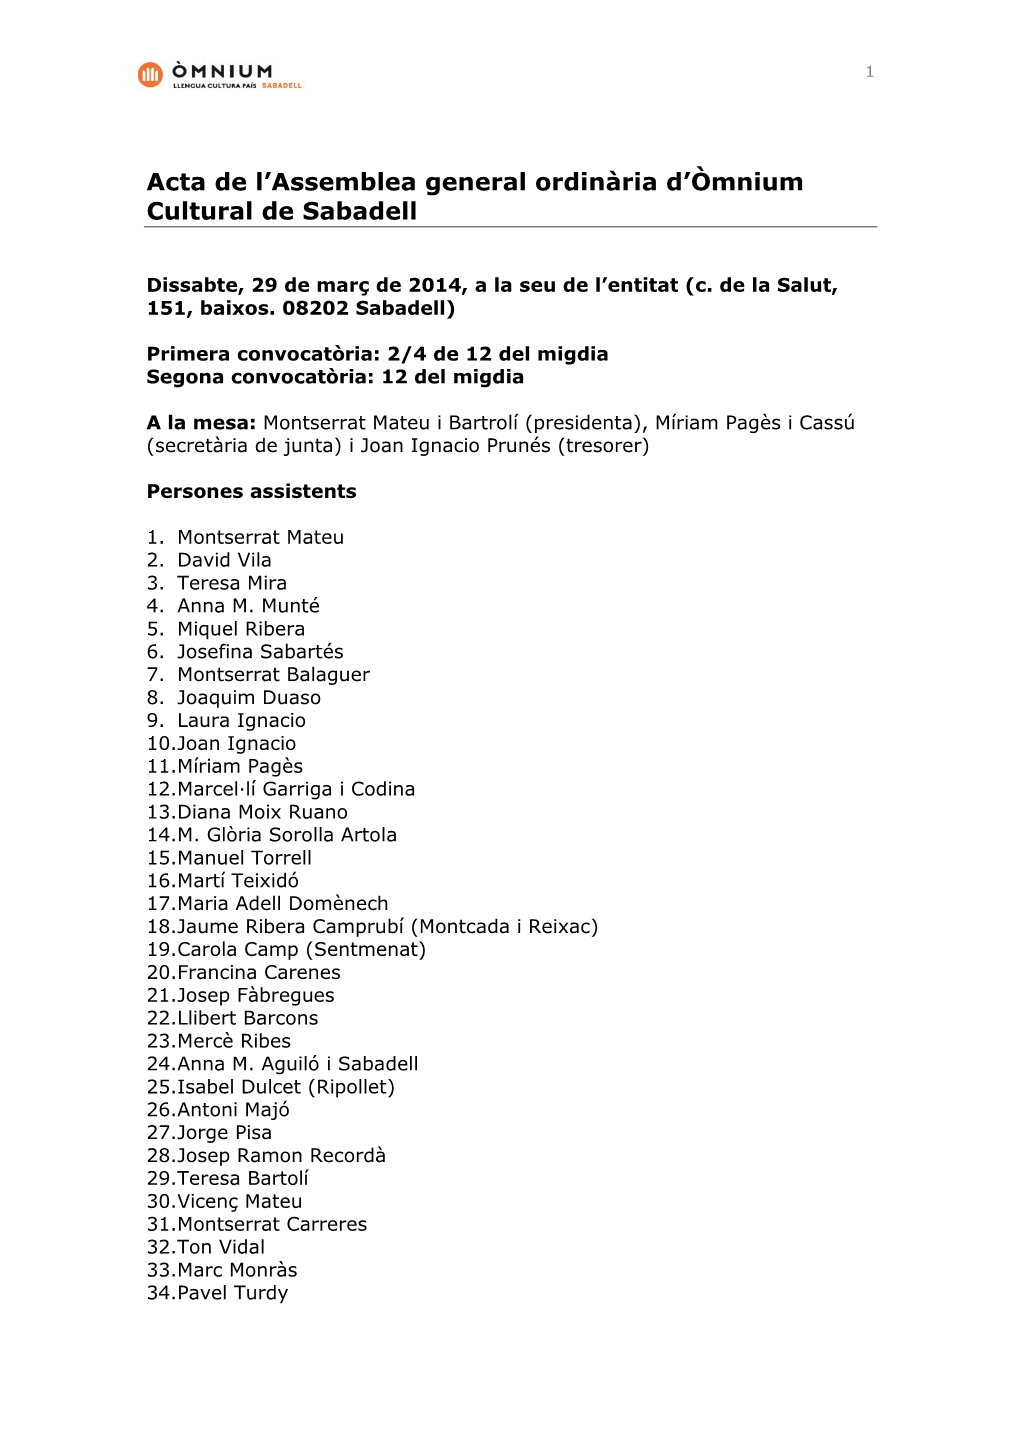 Acta De L'assemblea General Ordinària D'òmnium Cultural De Sabadell